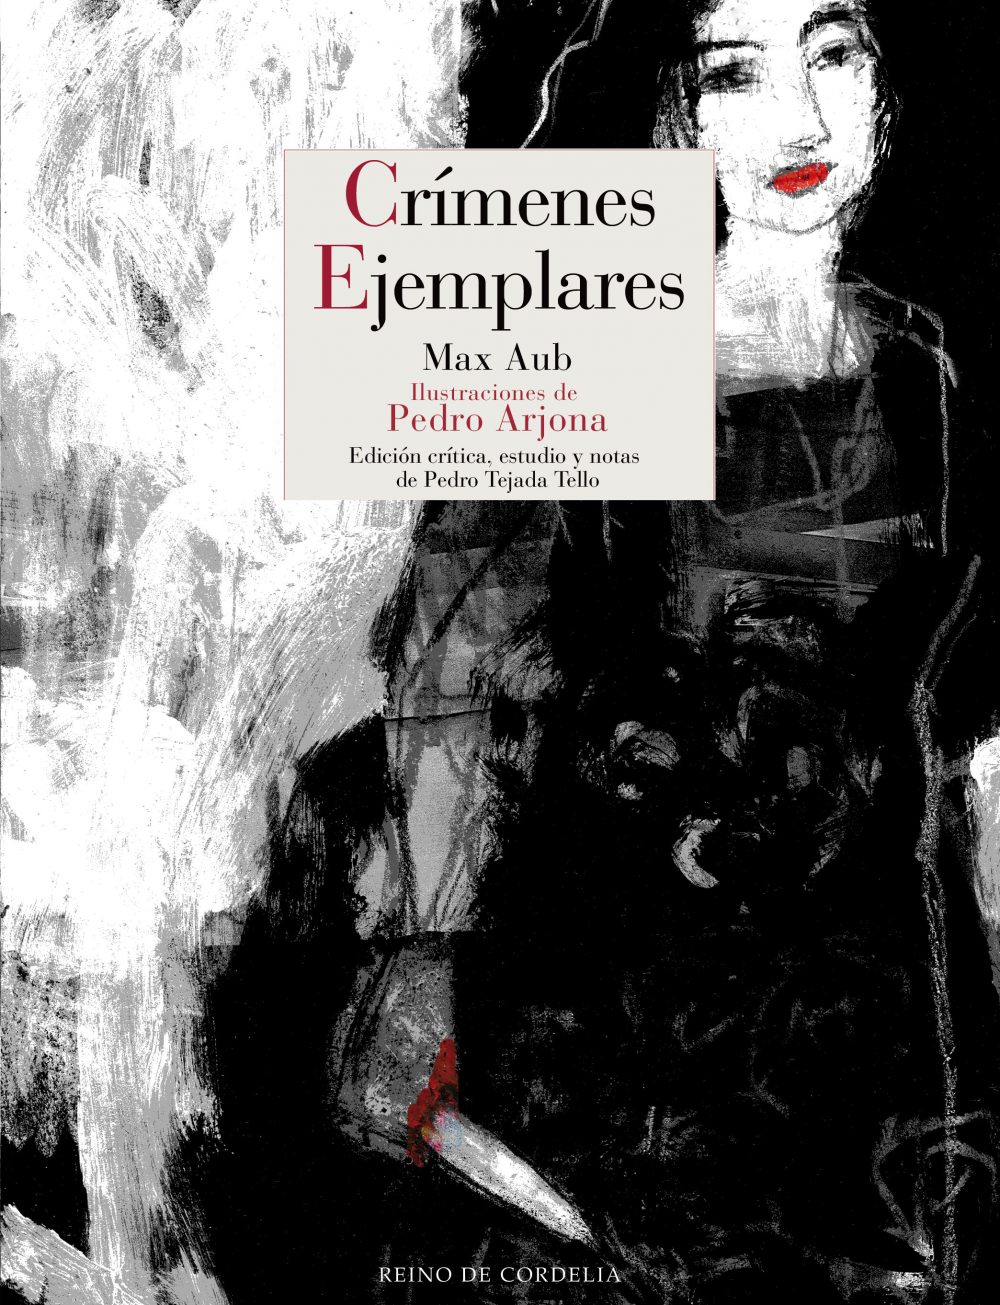 Crímenes ejemplares, de Max Aub